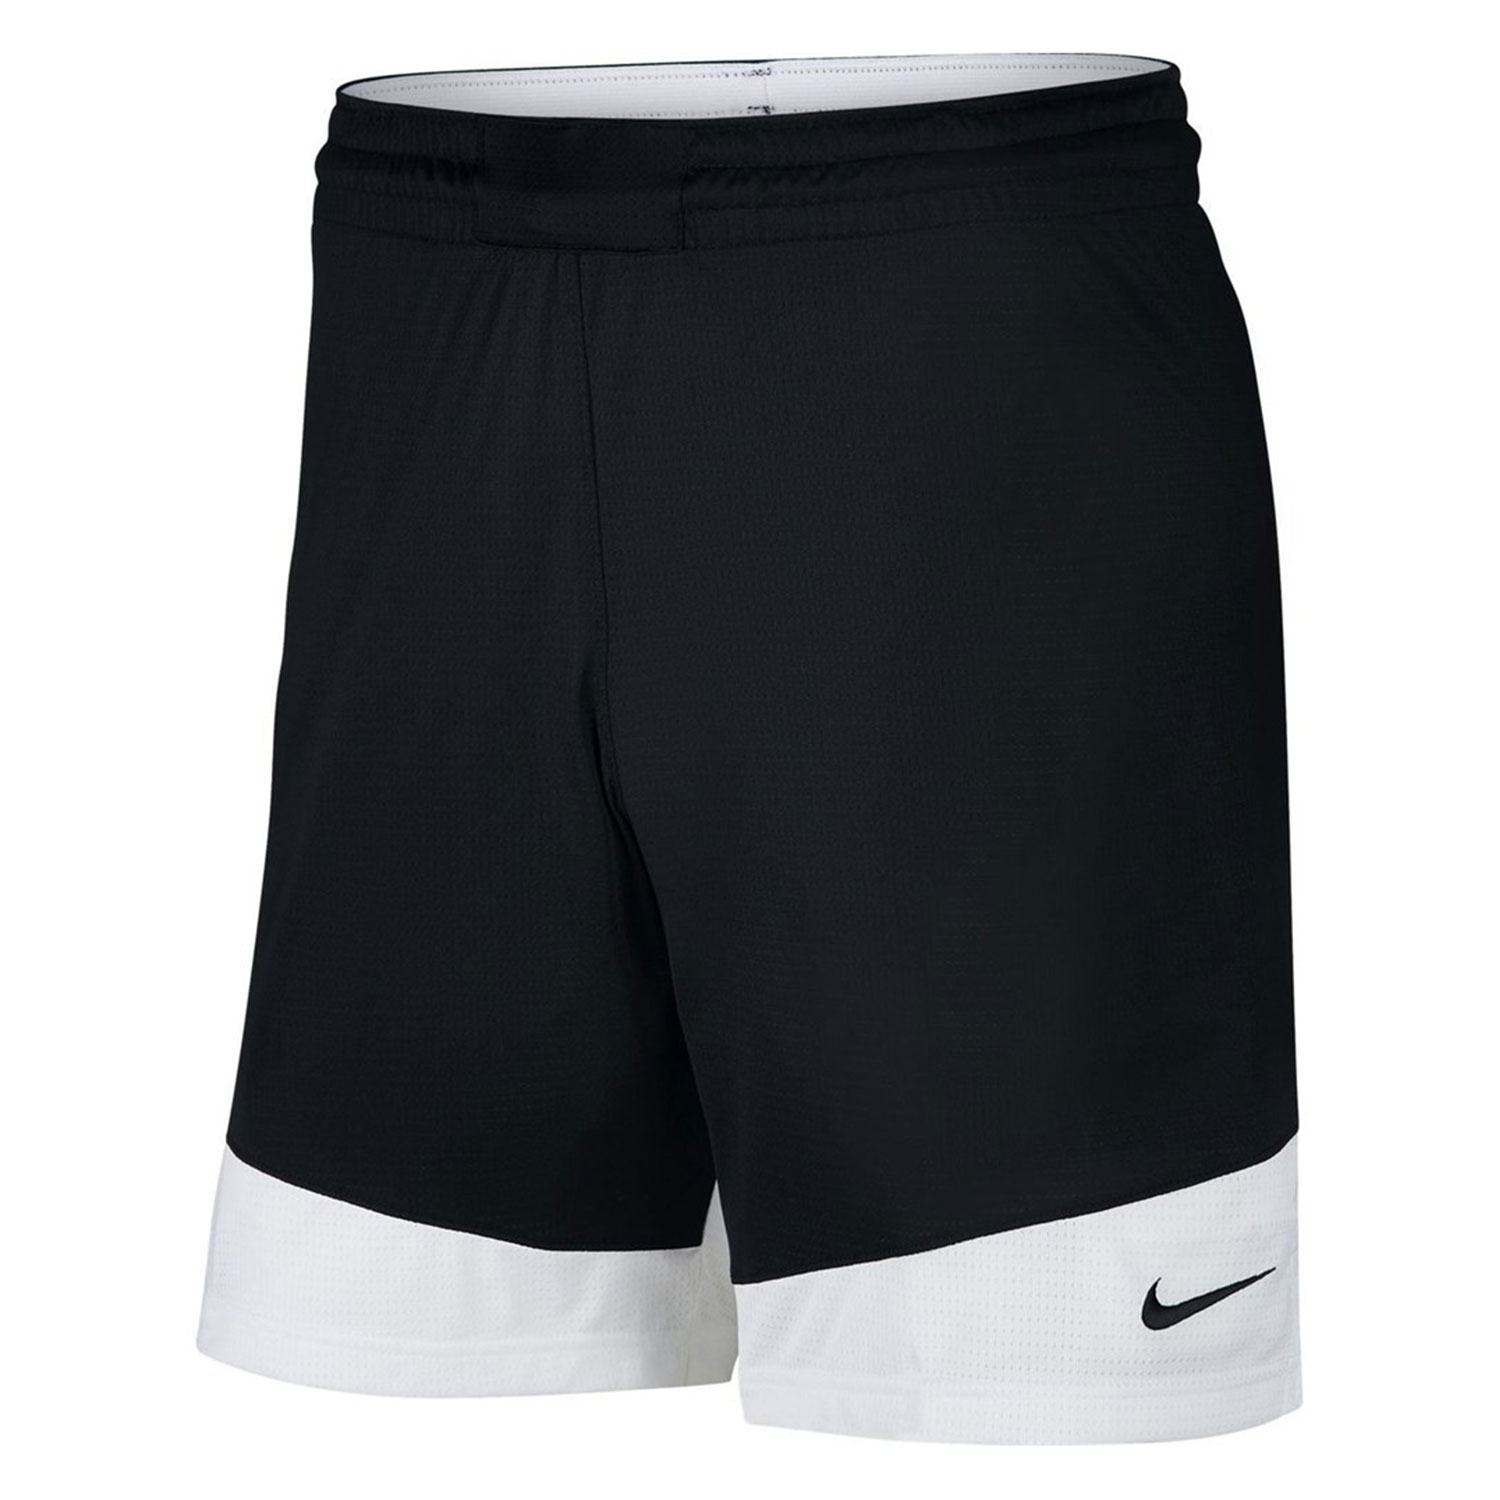 Nike Practice Shorts - Black / White 